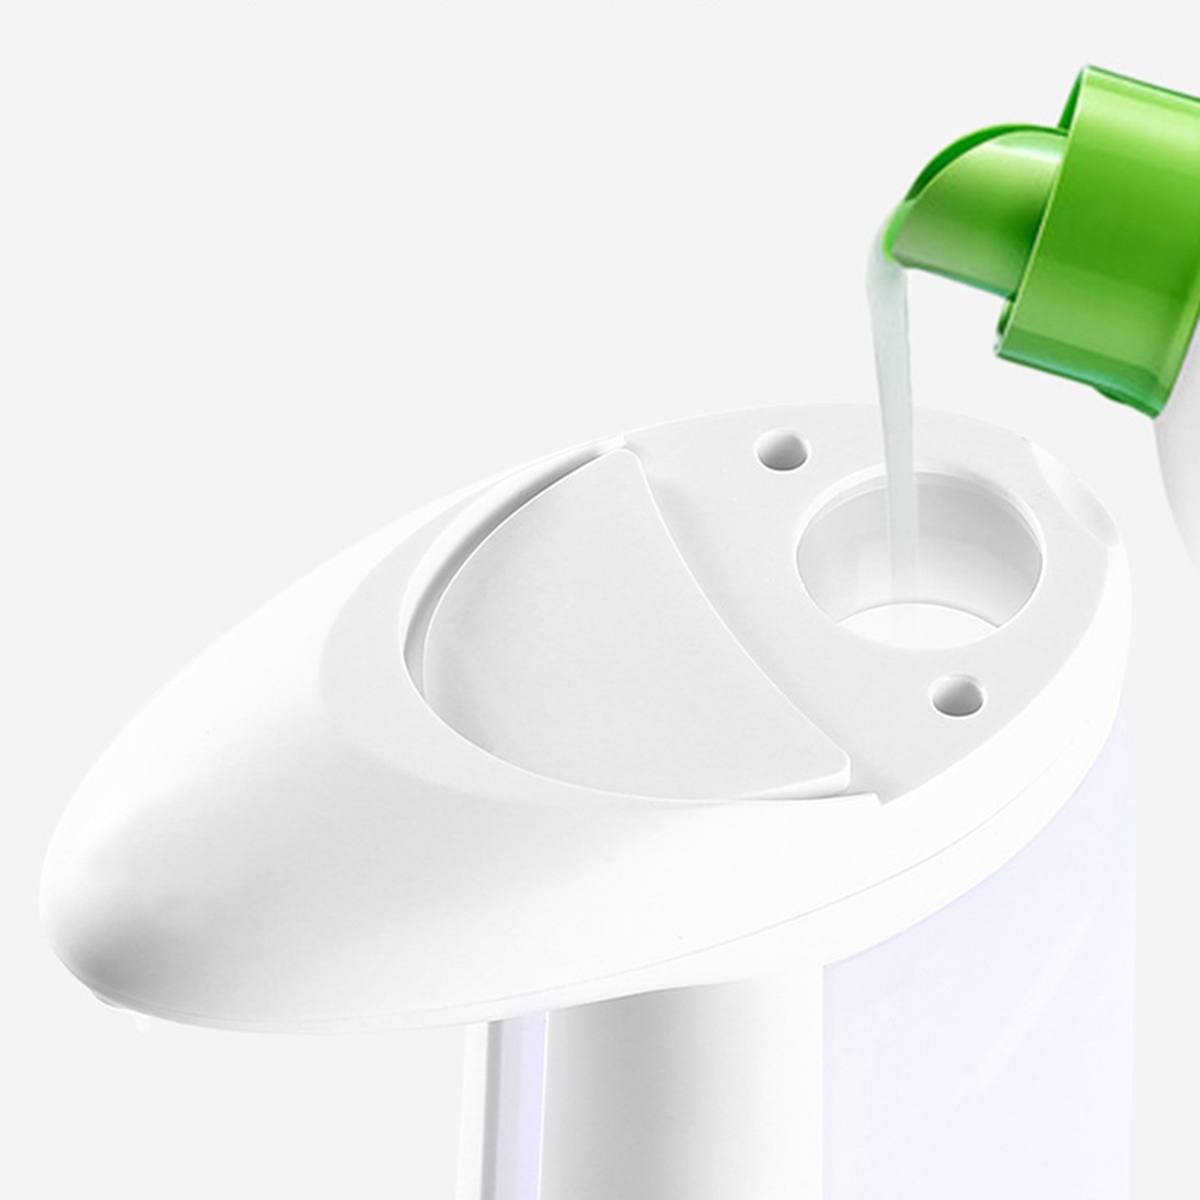 Бесконтактный диспенсер для жидкого мыла особенности дополнительная видимость уровня мыла поддерживает жидкое мыло поддерживает гелевое мыло